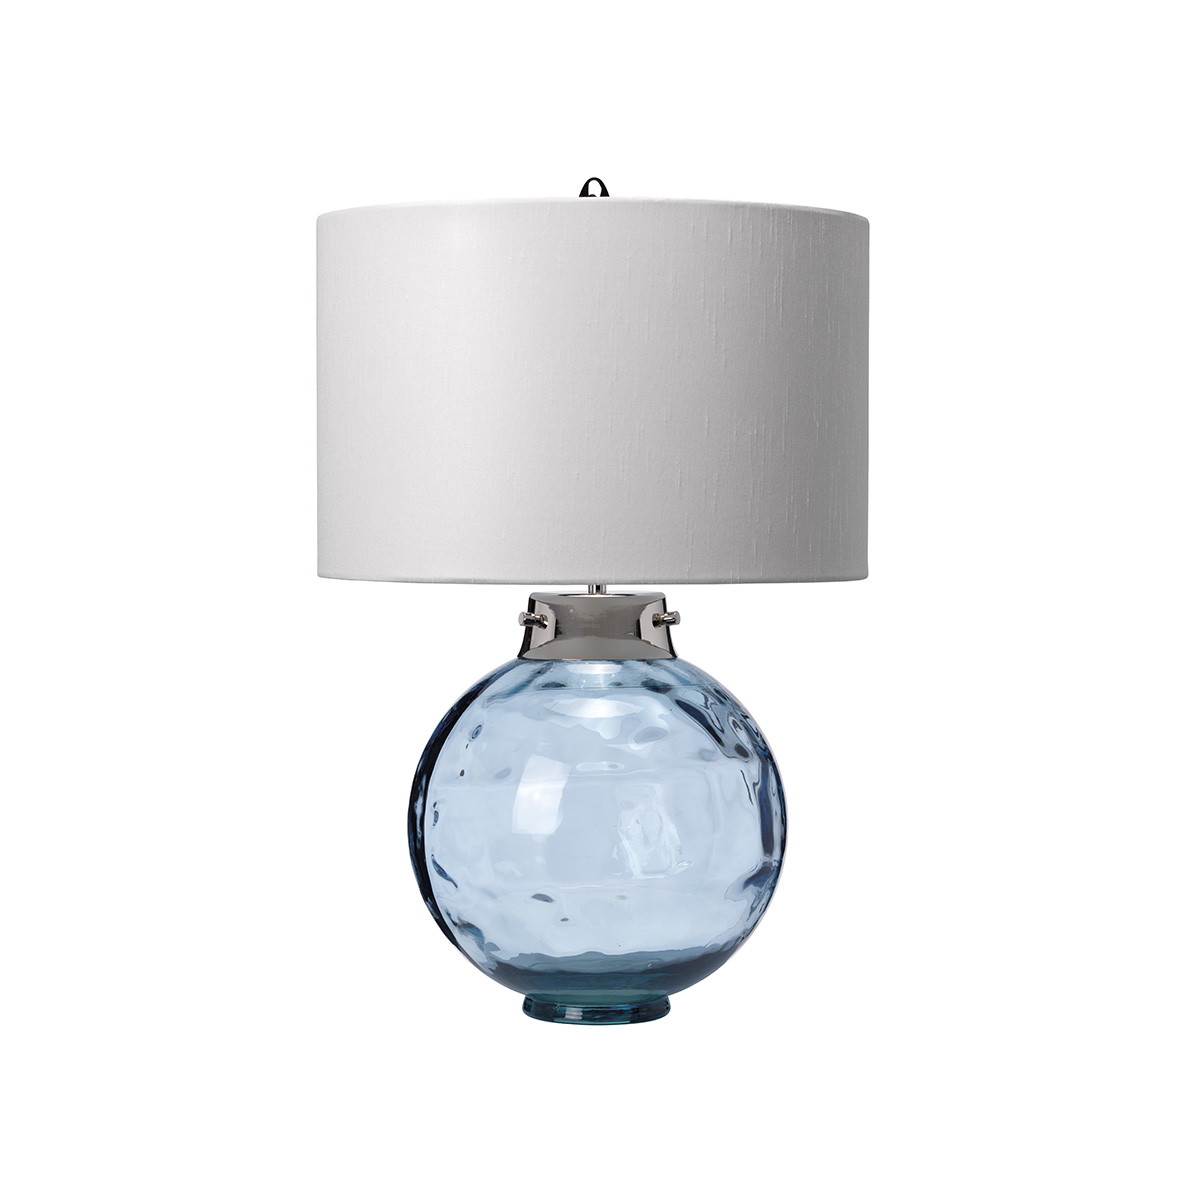 Настольная лампа Elstead Lighting, Арт. DL-KARA-TL-BLUE DL-KARA-TL-BLUE